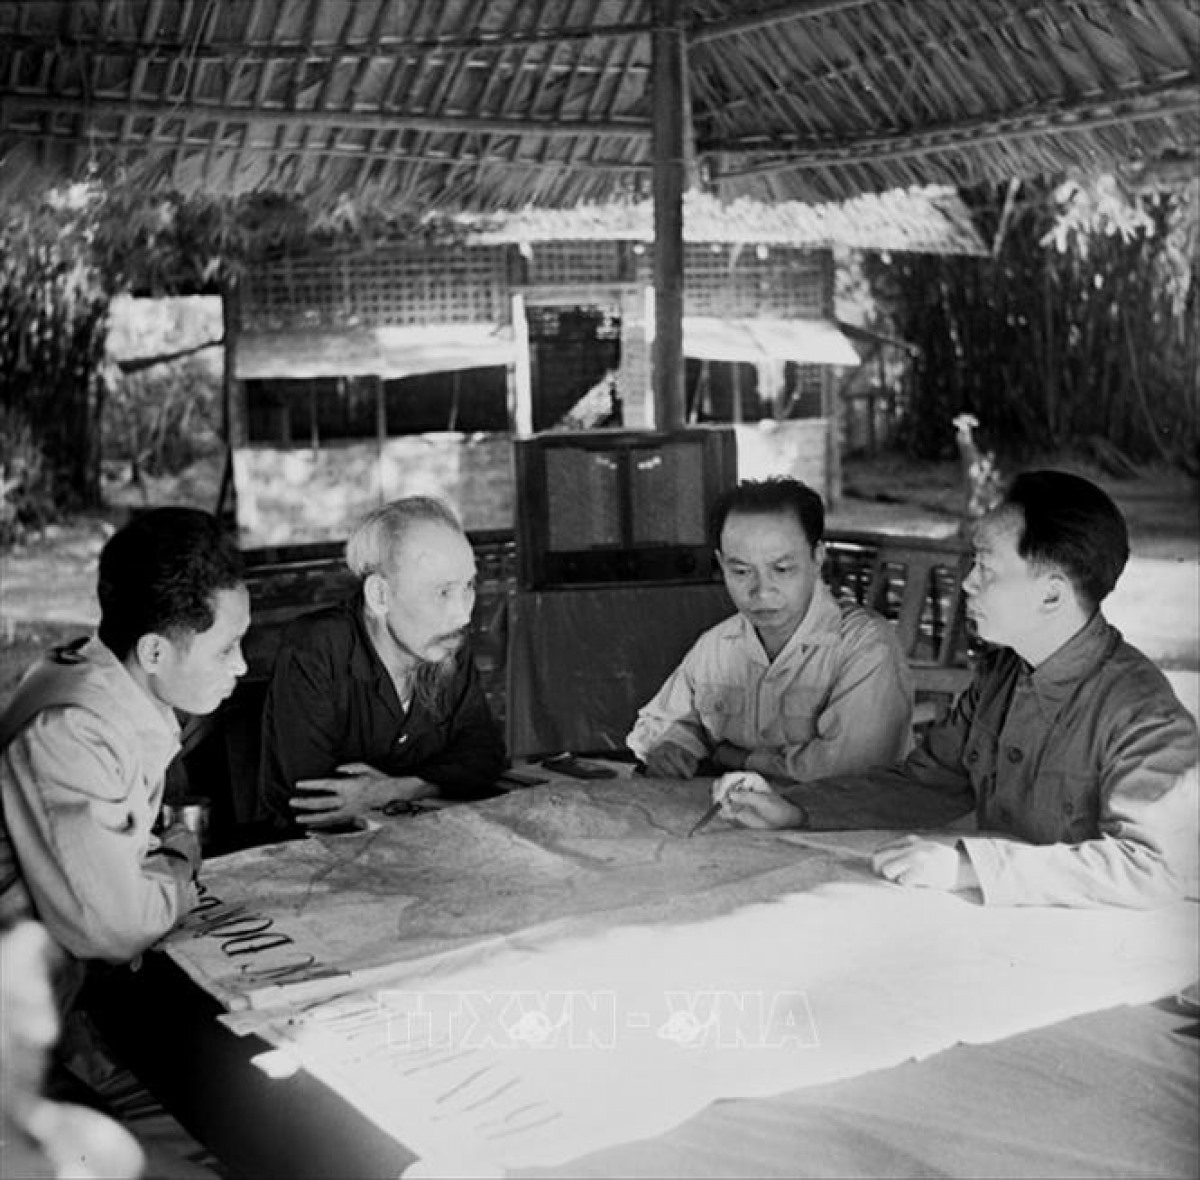 Chủ tịch Hồ Chí Minh, Đại tướng Võ Nguyên Giáp cùng các đồng chí lãnh đạo Đảng và Nhà nước bàn kế hoạch mở chiến dịch Điện Biên phủ năm 1954 (Ảnh tư liệu TTXVN)